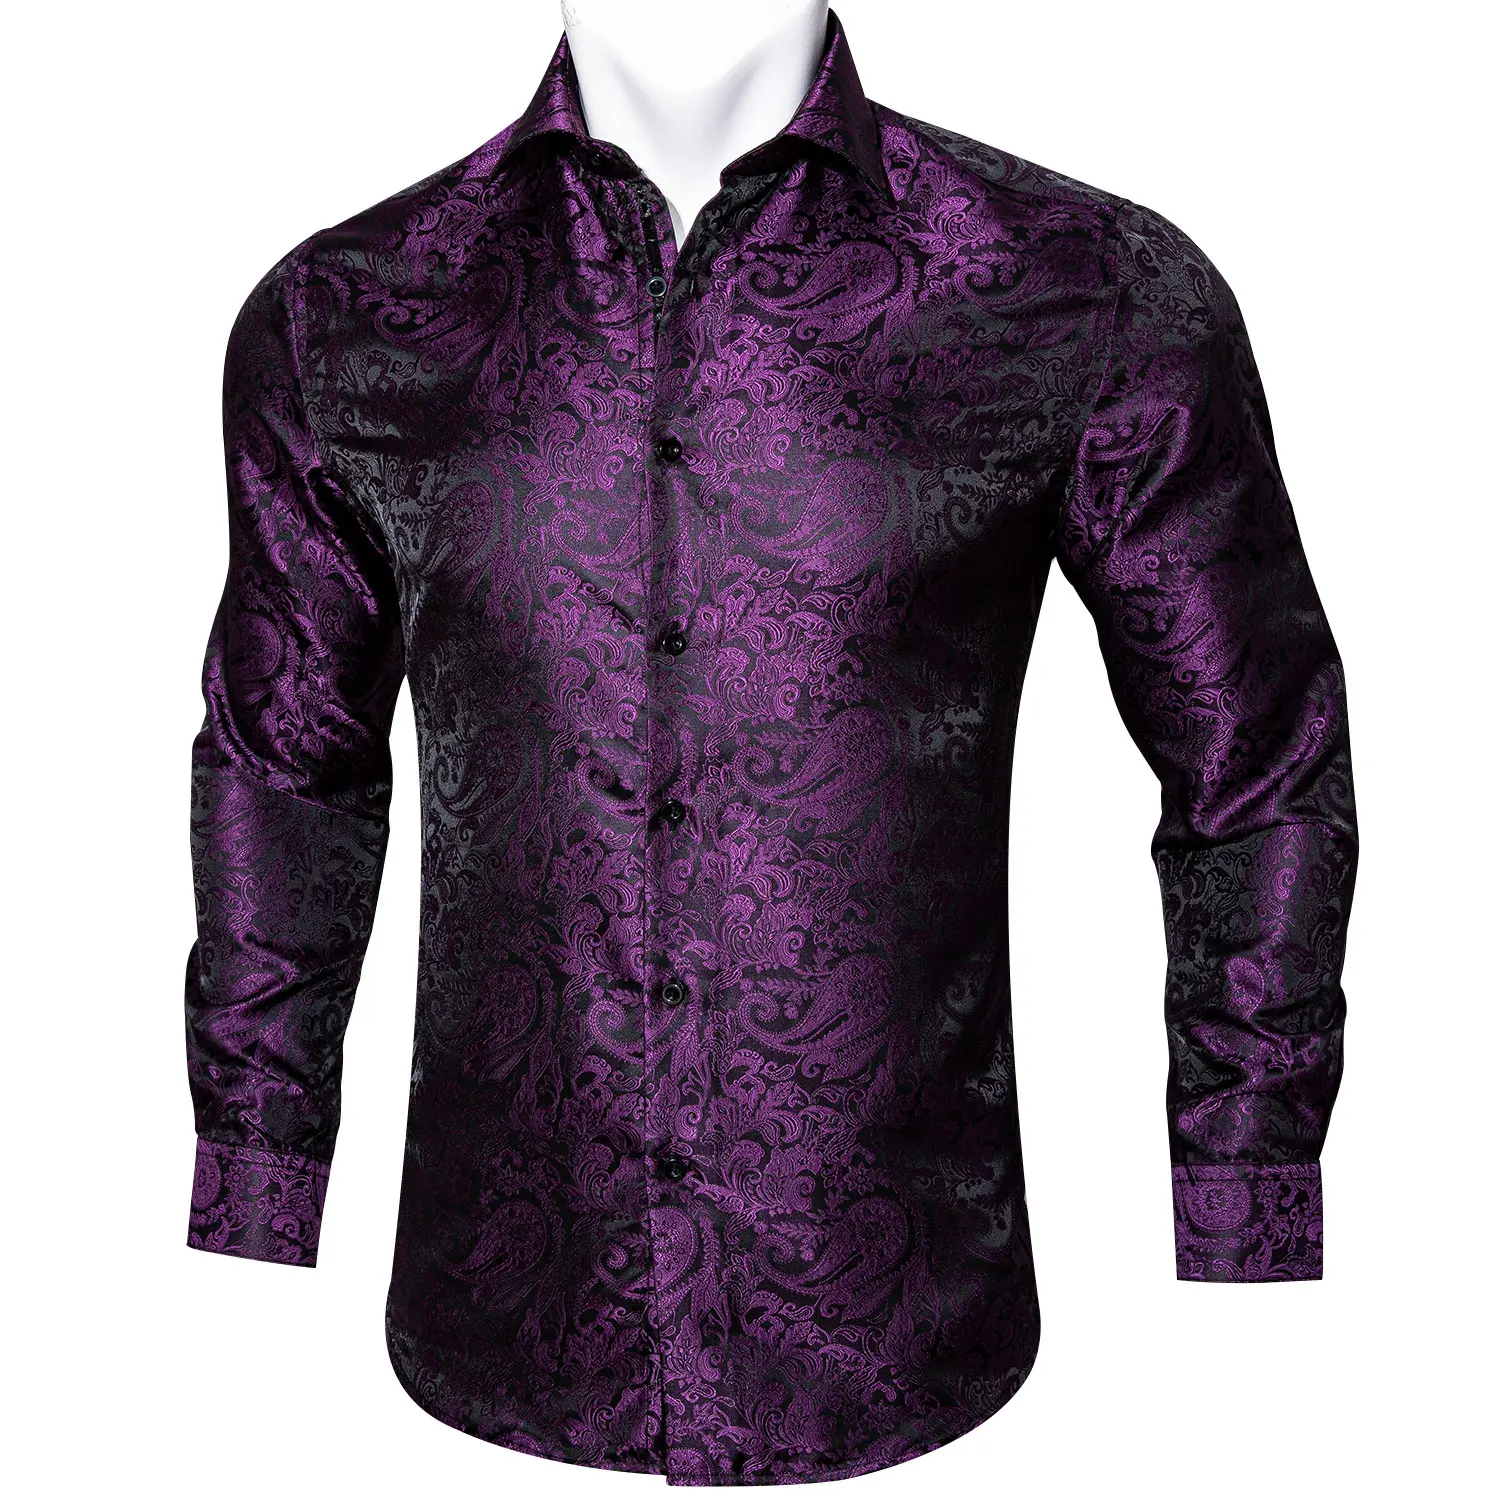 

Рубашка мужская с длинным рукавом и цветочным принтом, шелковая сорочка с принтом пейсли, повседневная дизайнерская сорочка, фиолетовый цв...